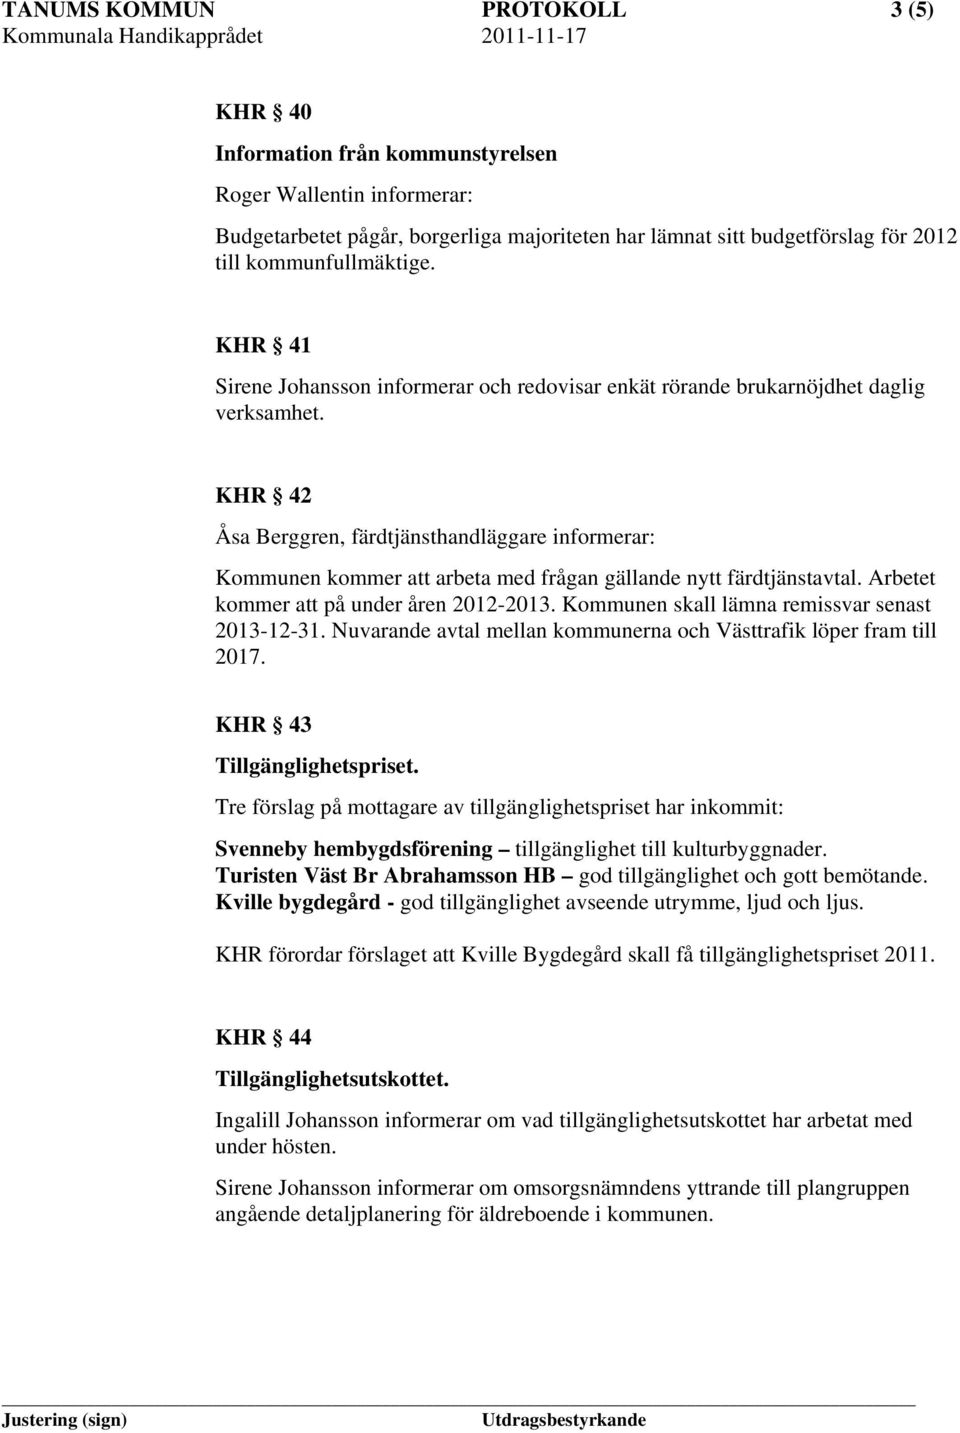 KHR 42 Åsa Berggren, färdtjänsthandläggare informerar: Kommunen kommer att arbeta med frågan gällande nytt färdtjänstavtal. Arbetet kommer att på under åren 2012-2013.